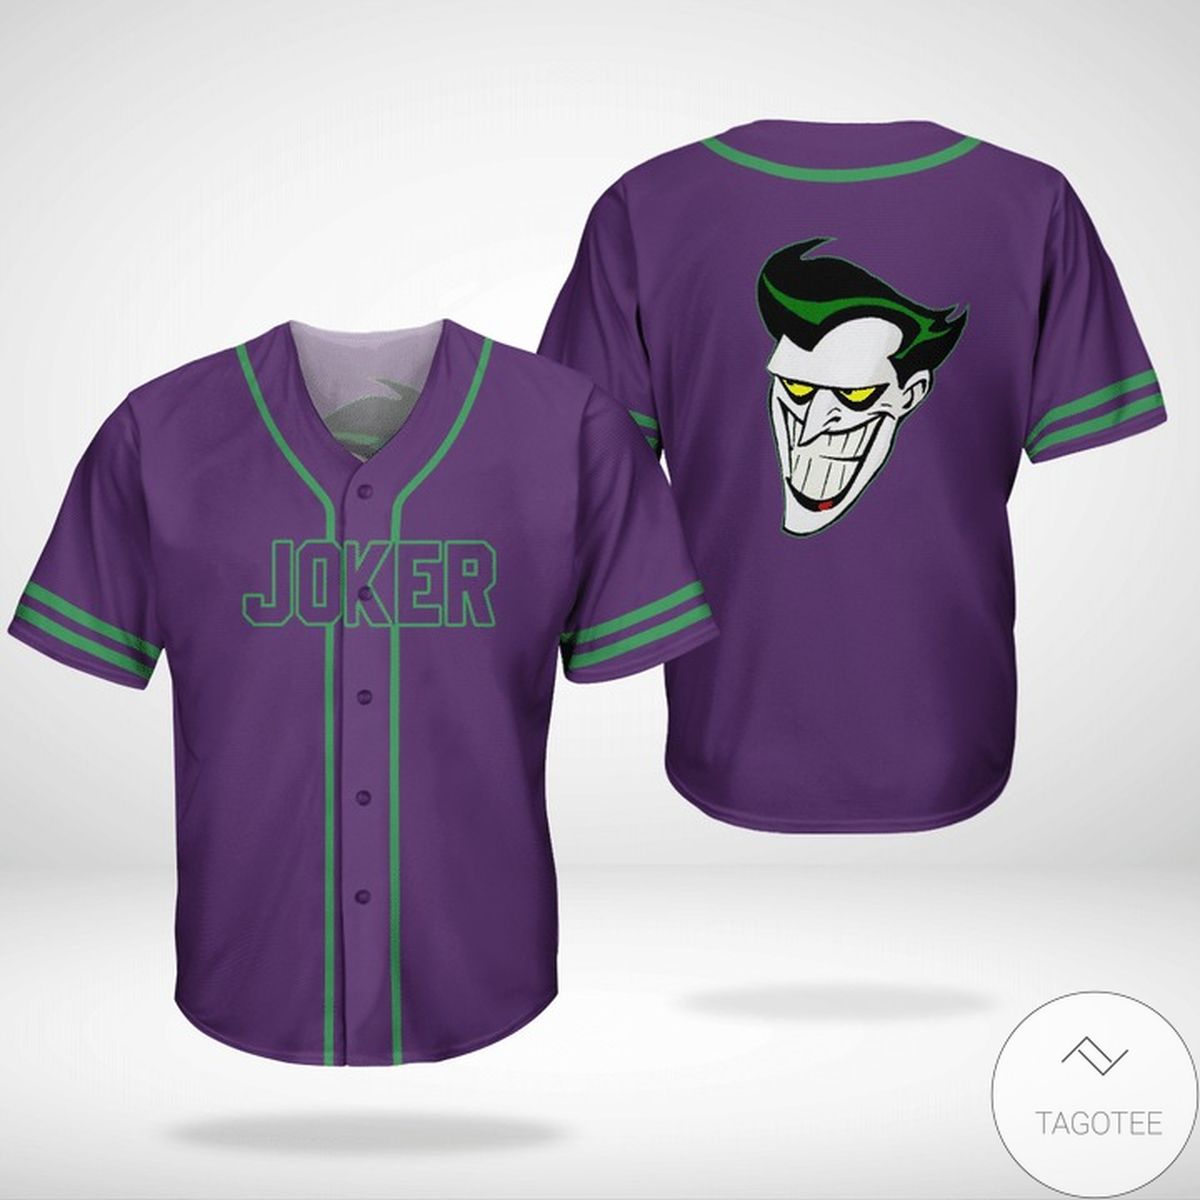 Batman Joker Jersey Baseball Shirt